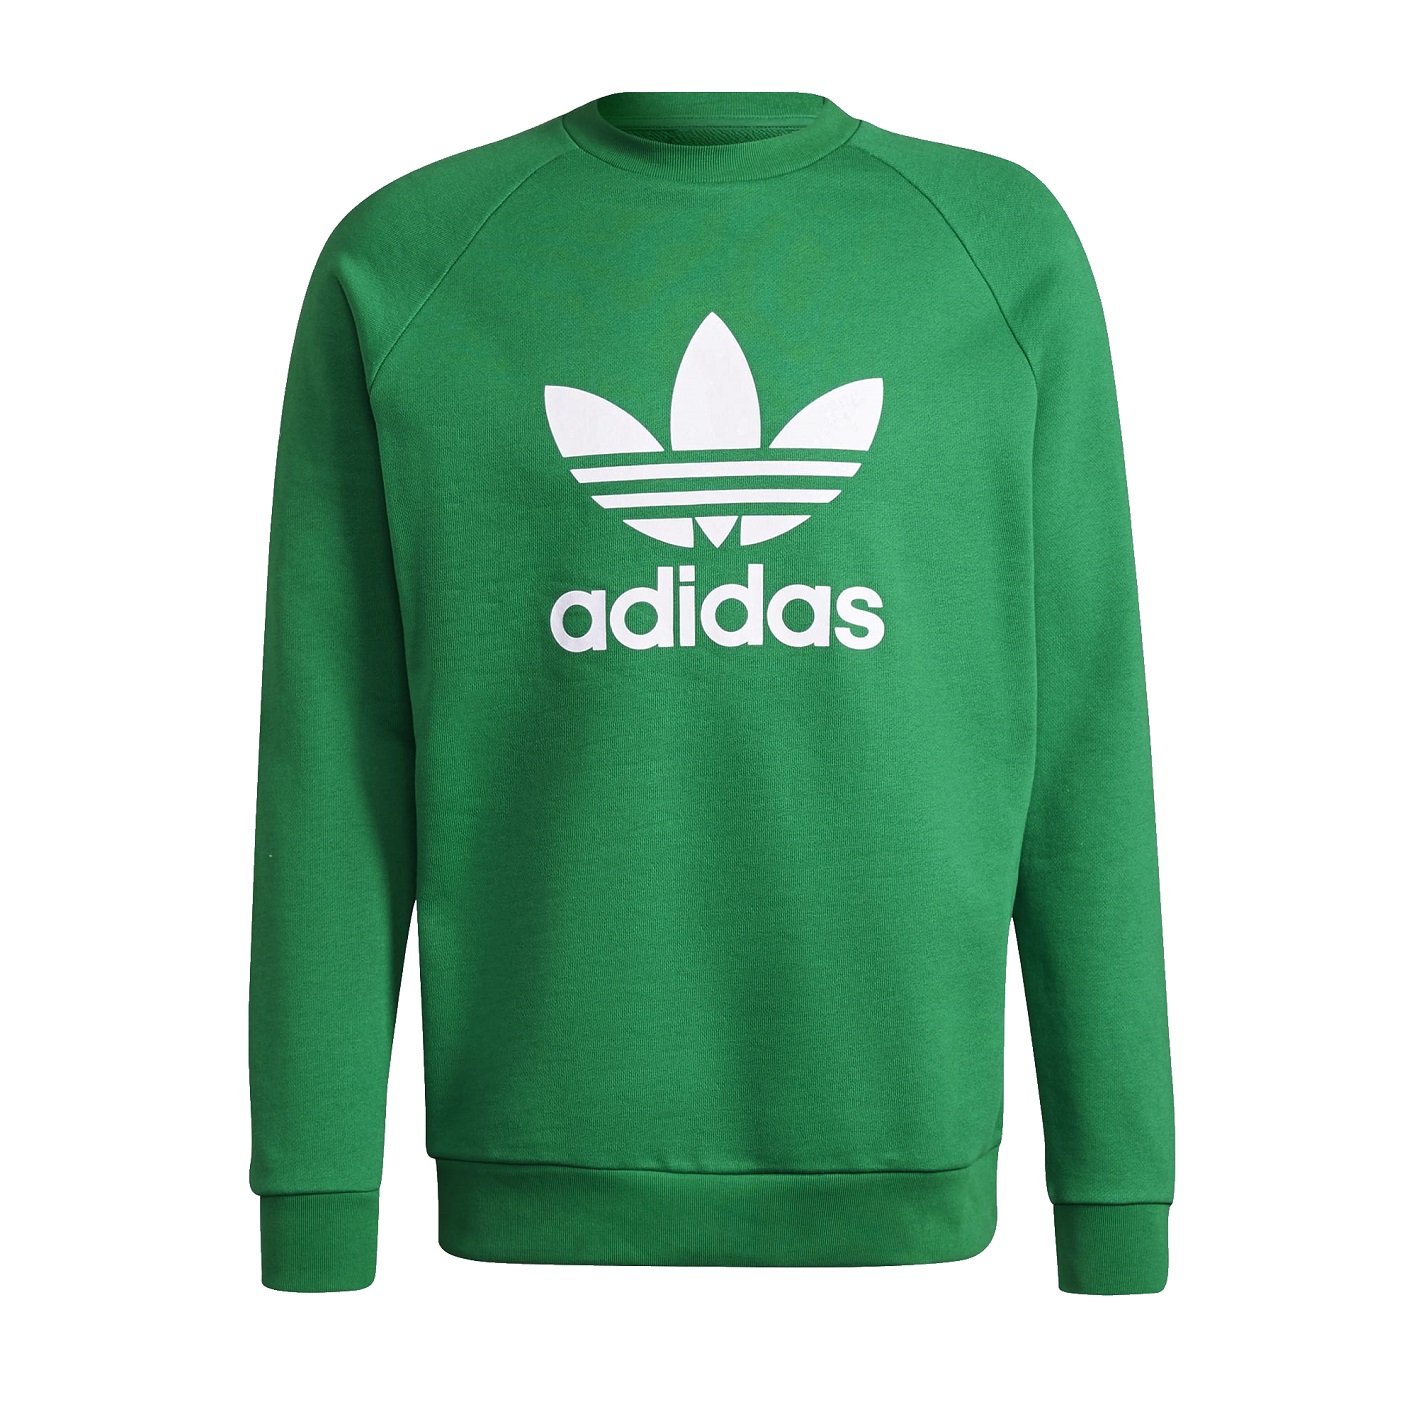 ☆ Adidas Trefoil Sweatshirt grün - hier bestellen!